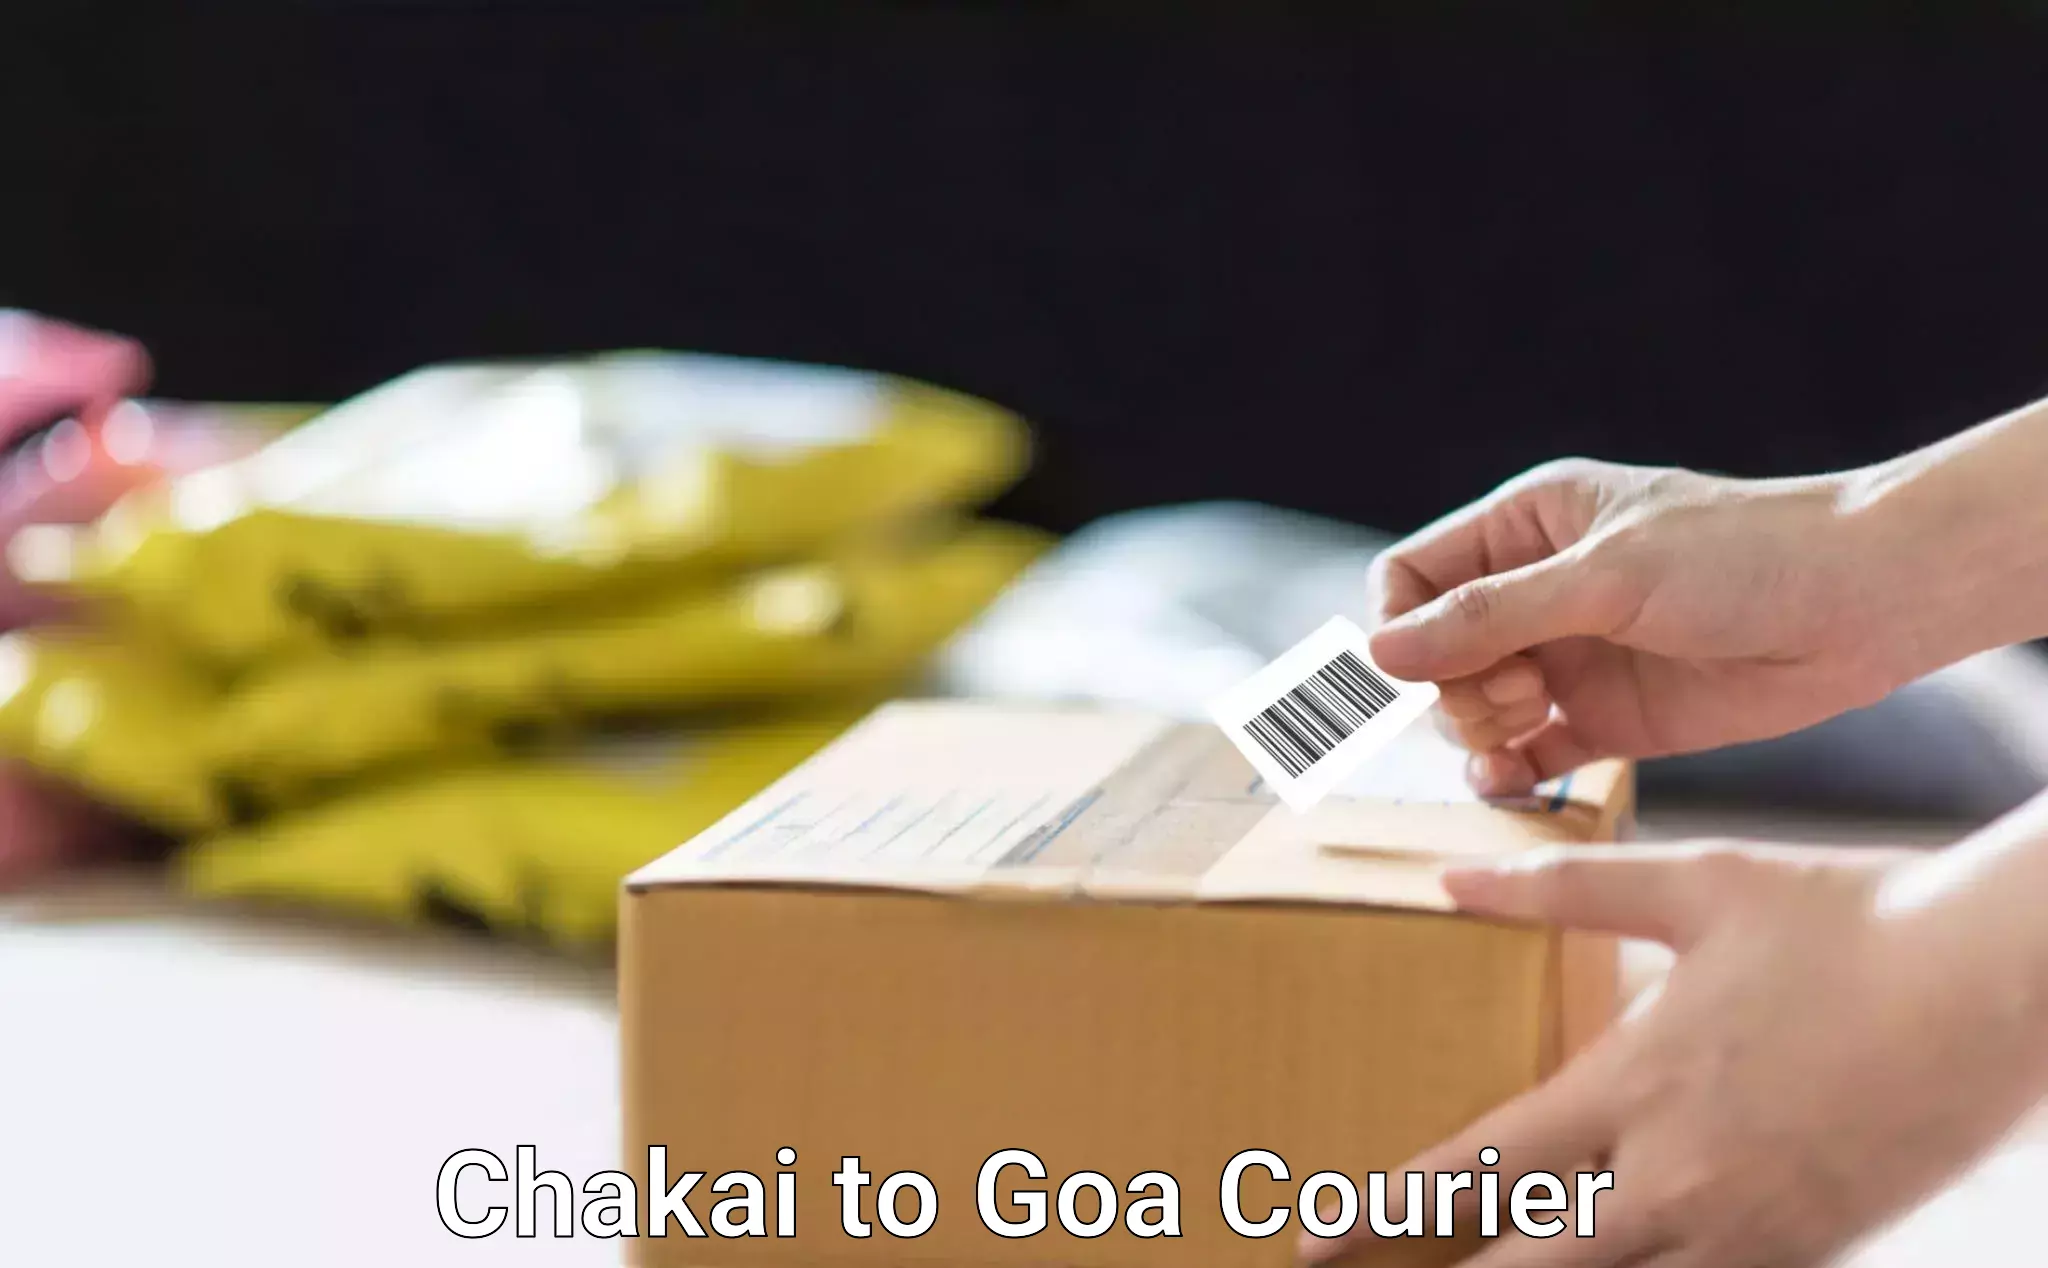 Efficient moving company Chakai to Goa